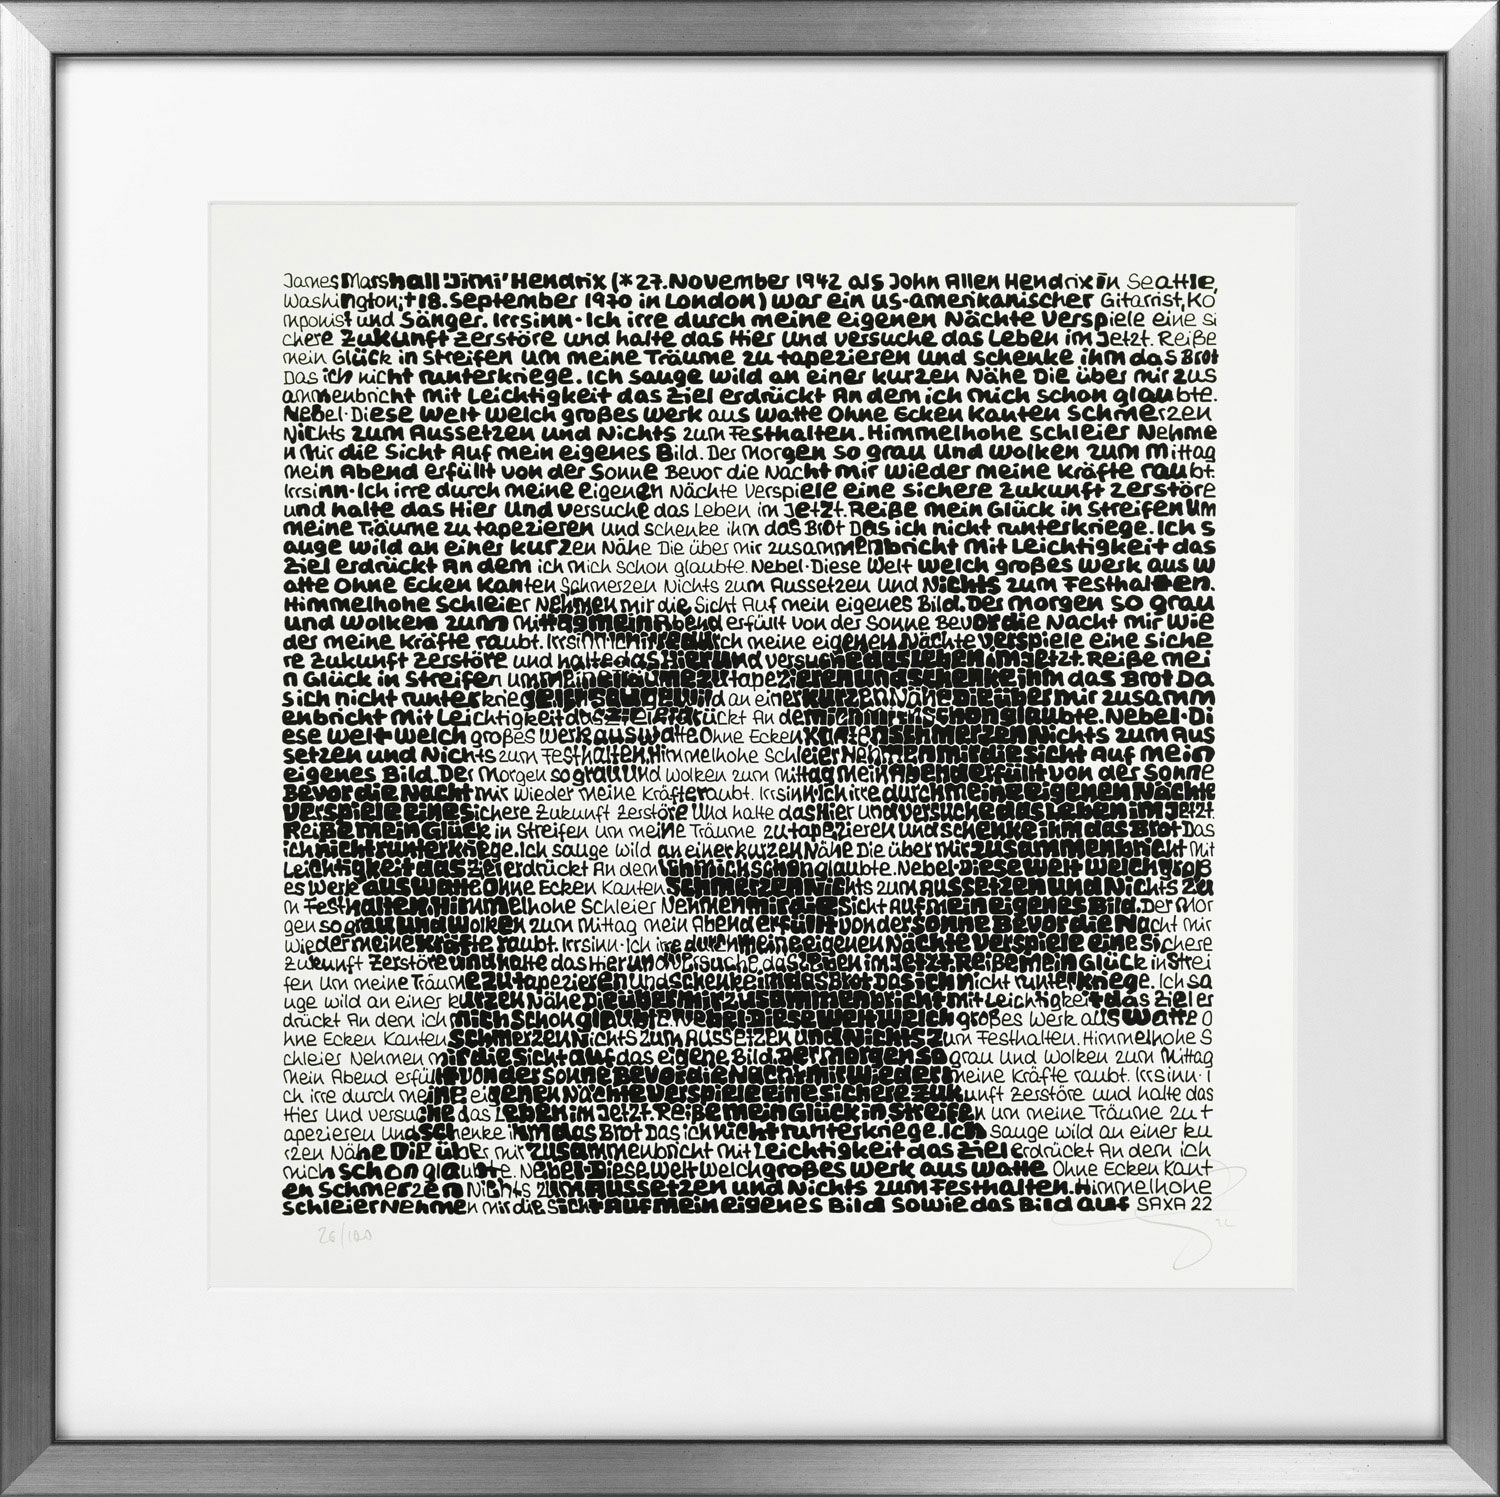 Billede "Jimi Hendrix" (2022), indrammet von SAXA